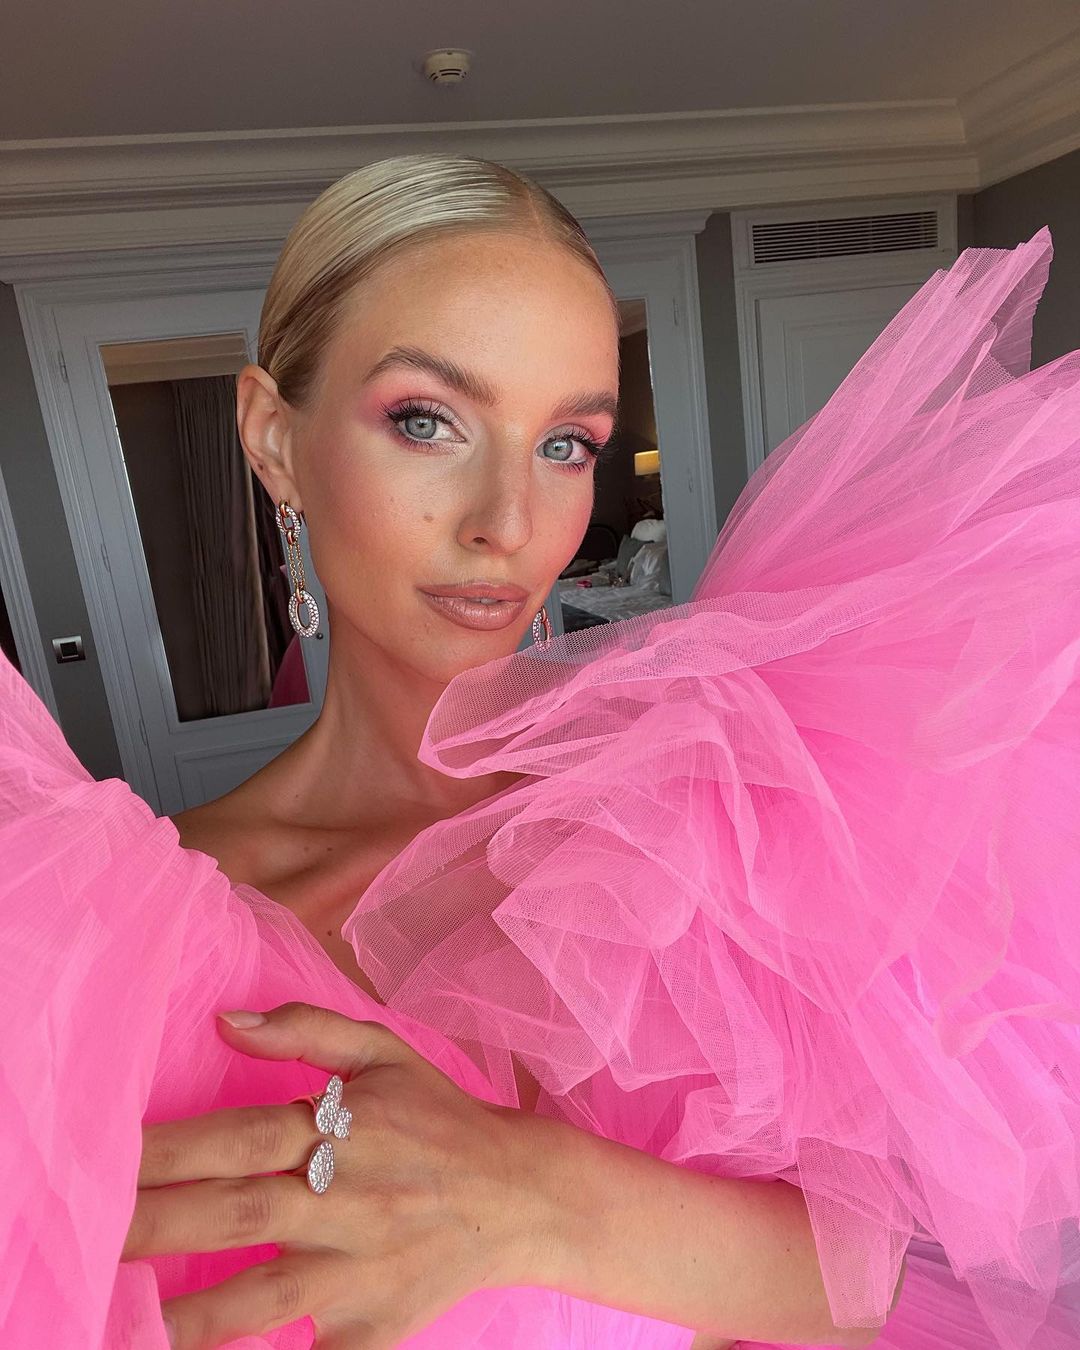 La influencer Leonie Hanne posa con un vestido de tul rosa y un maquillaje de ojos a juego